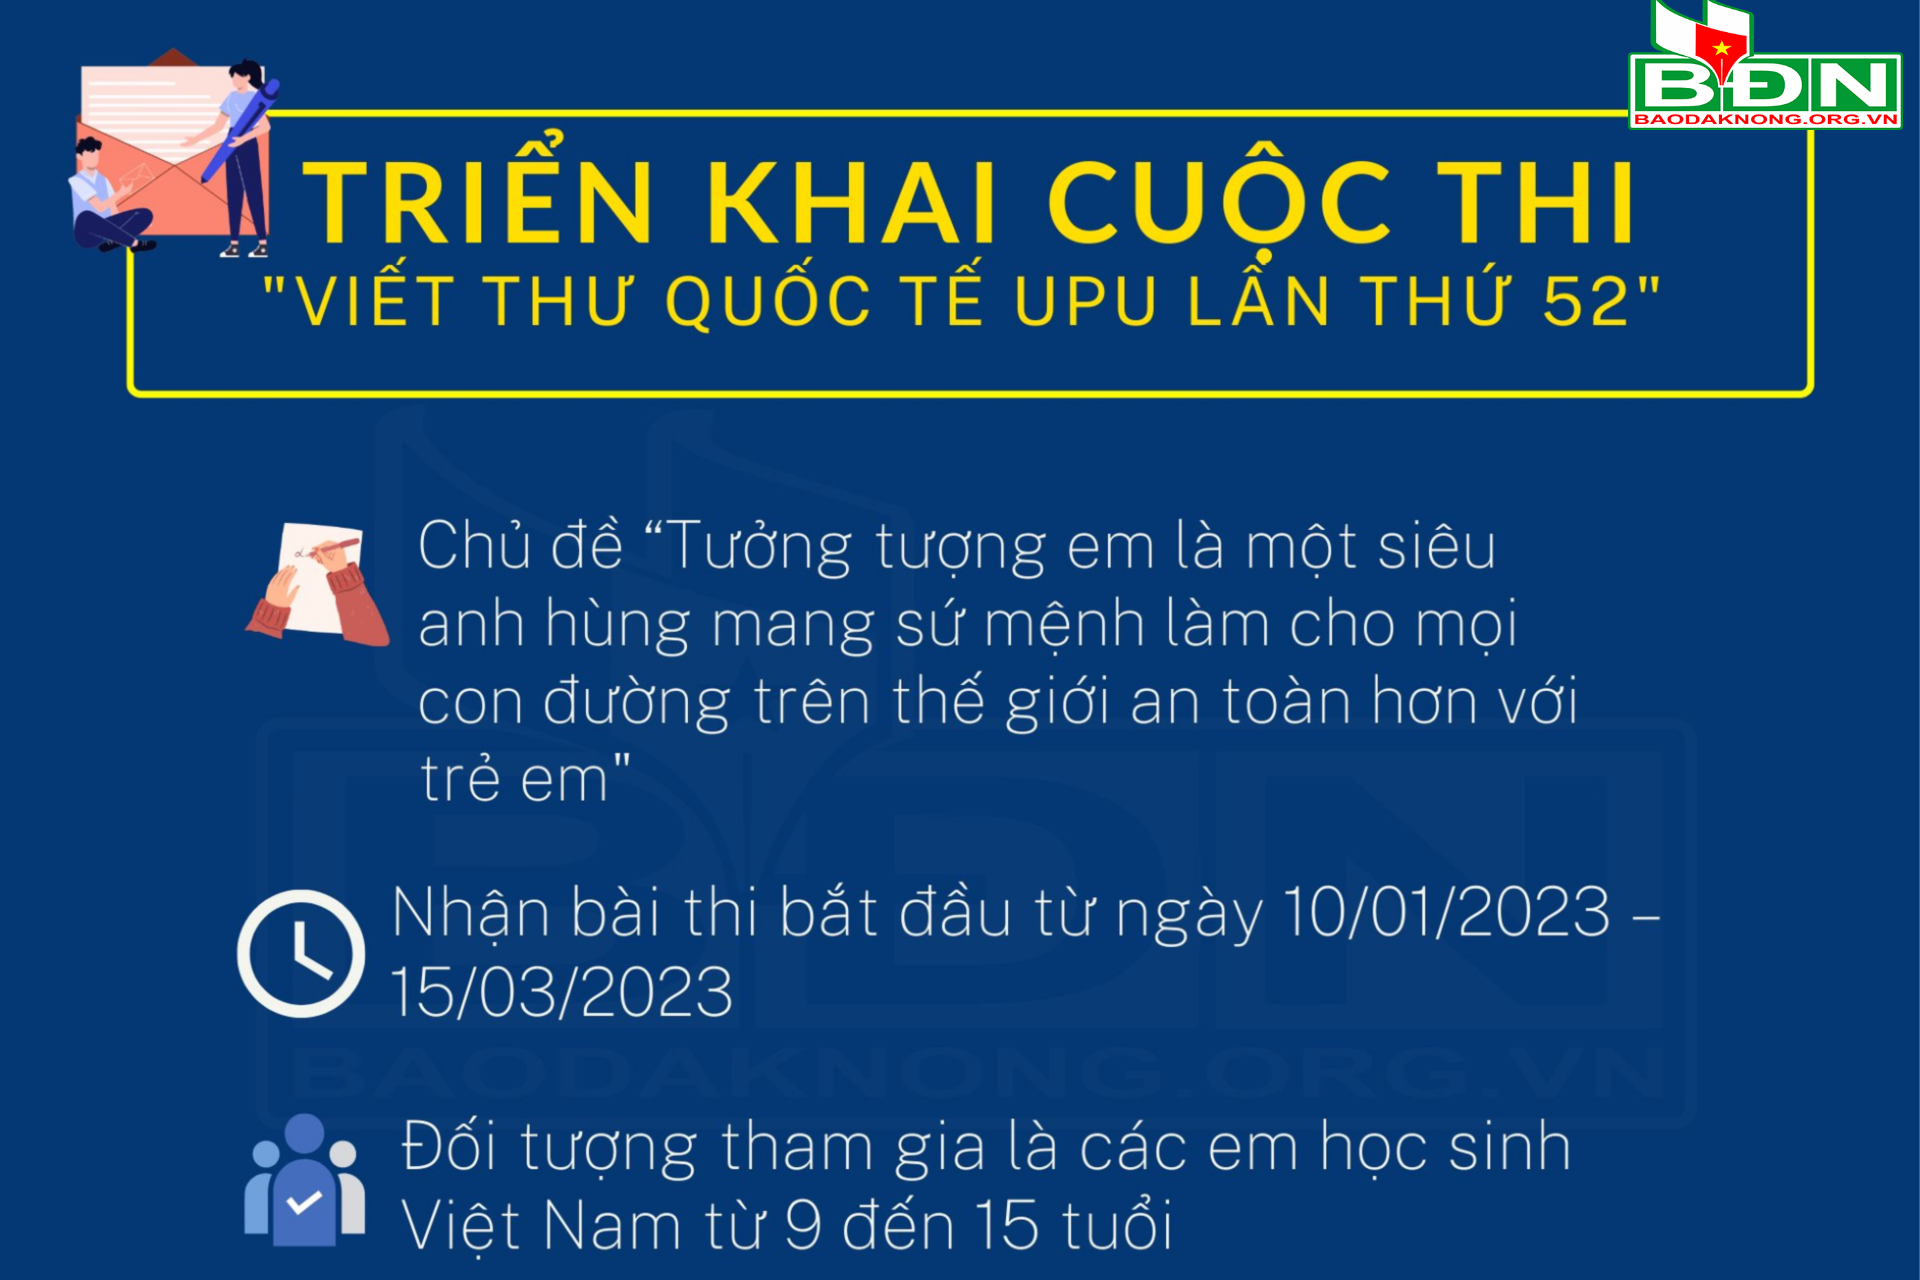 cuoc-thi-viet-thu(1).png